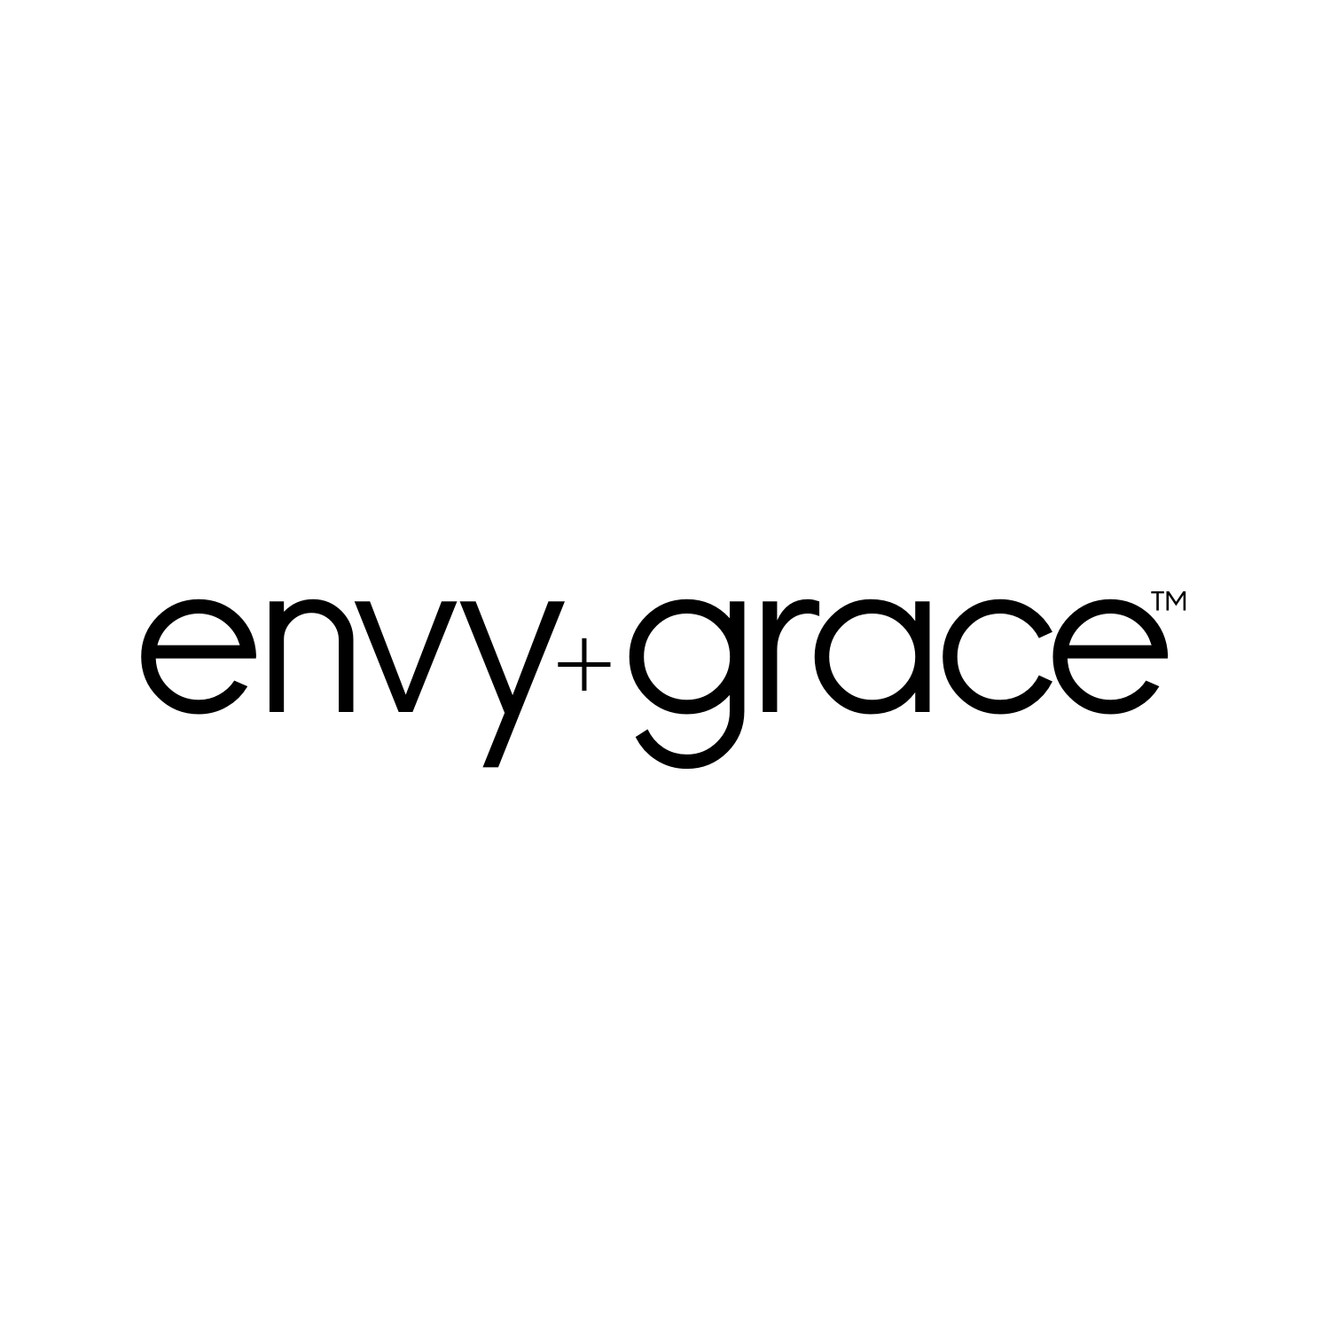 Envy + Grace